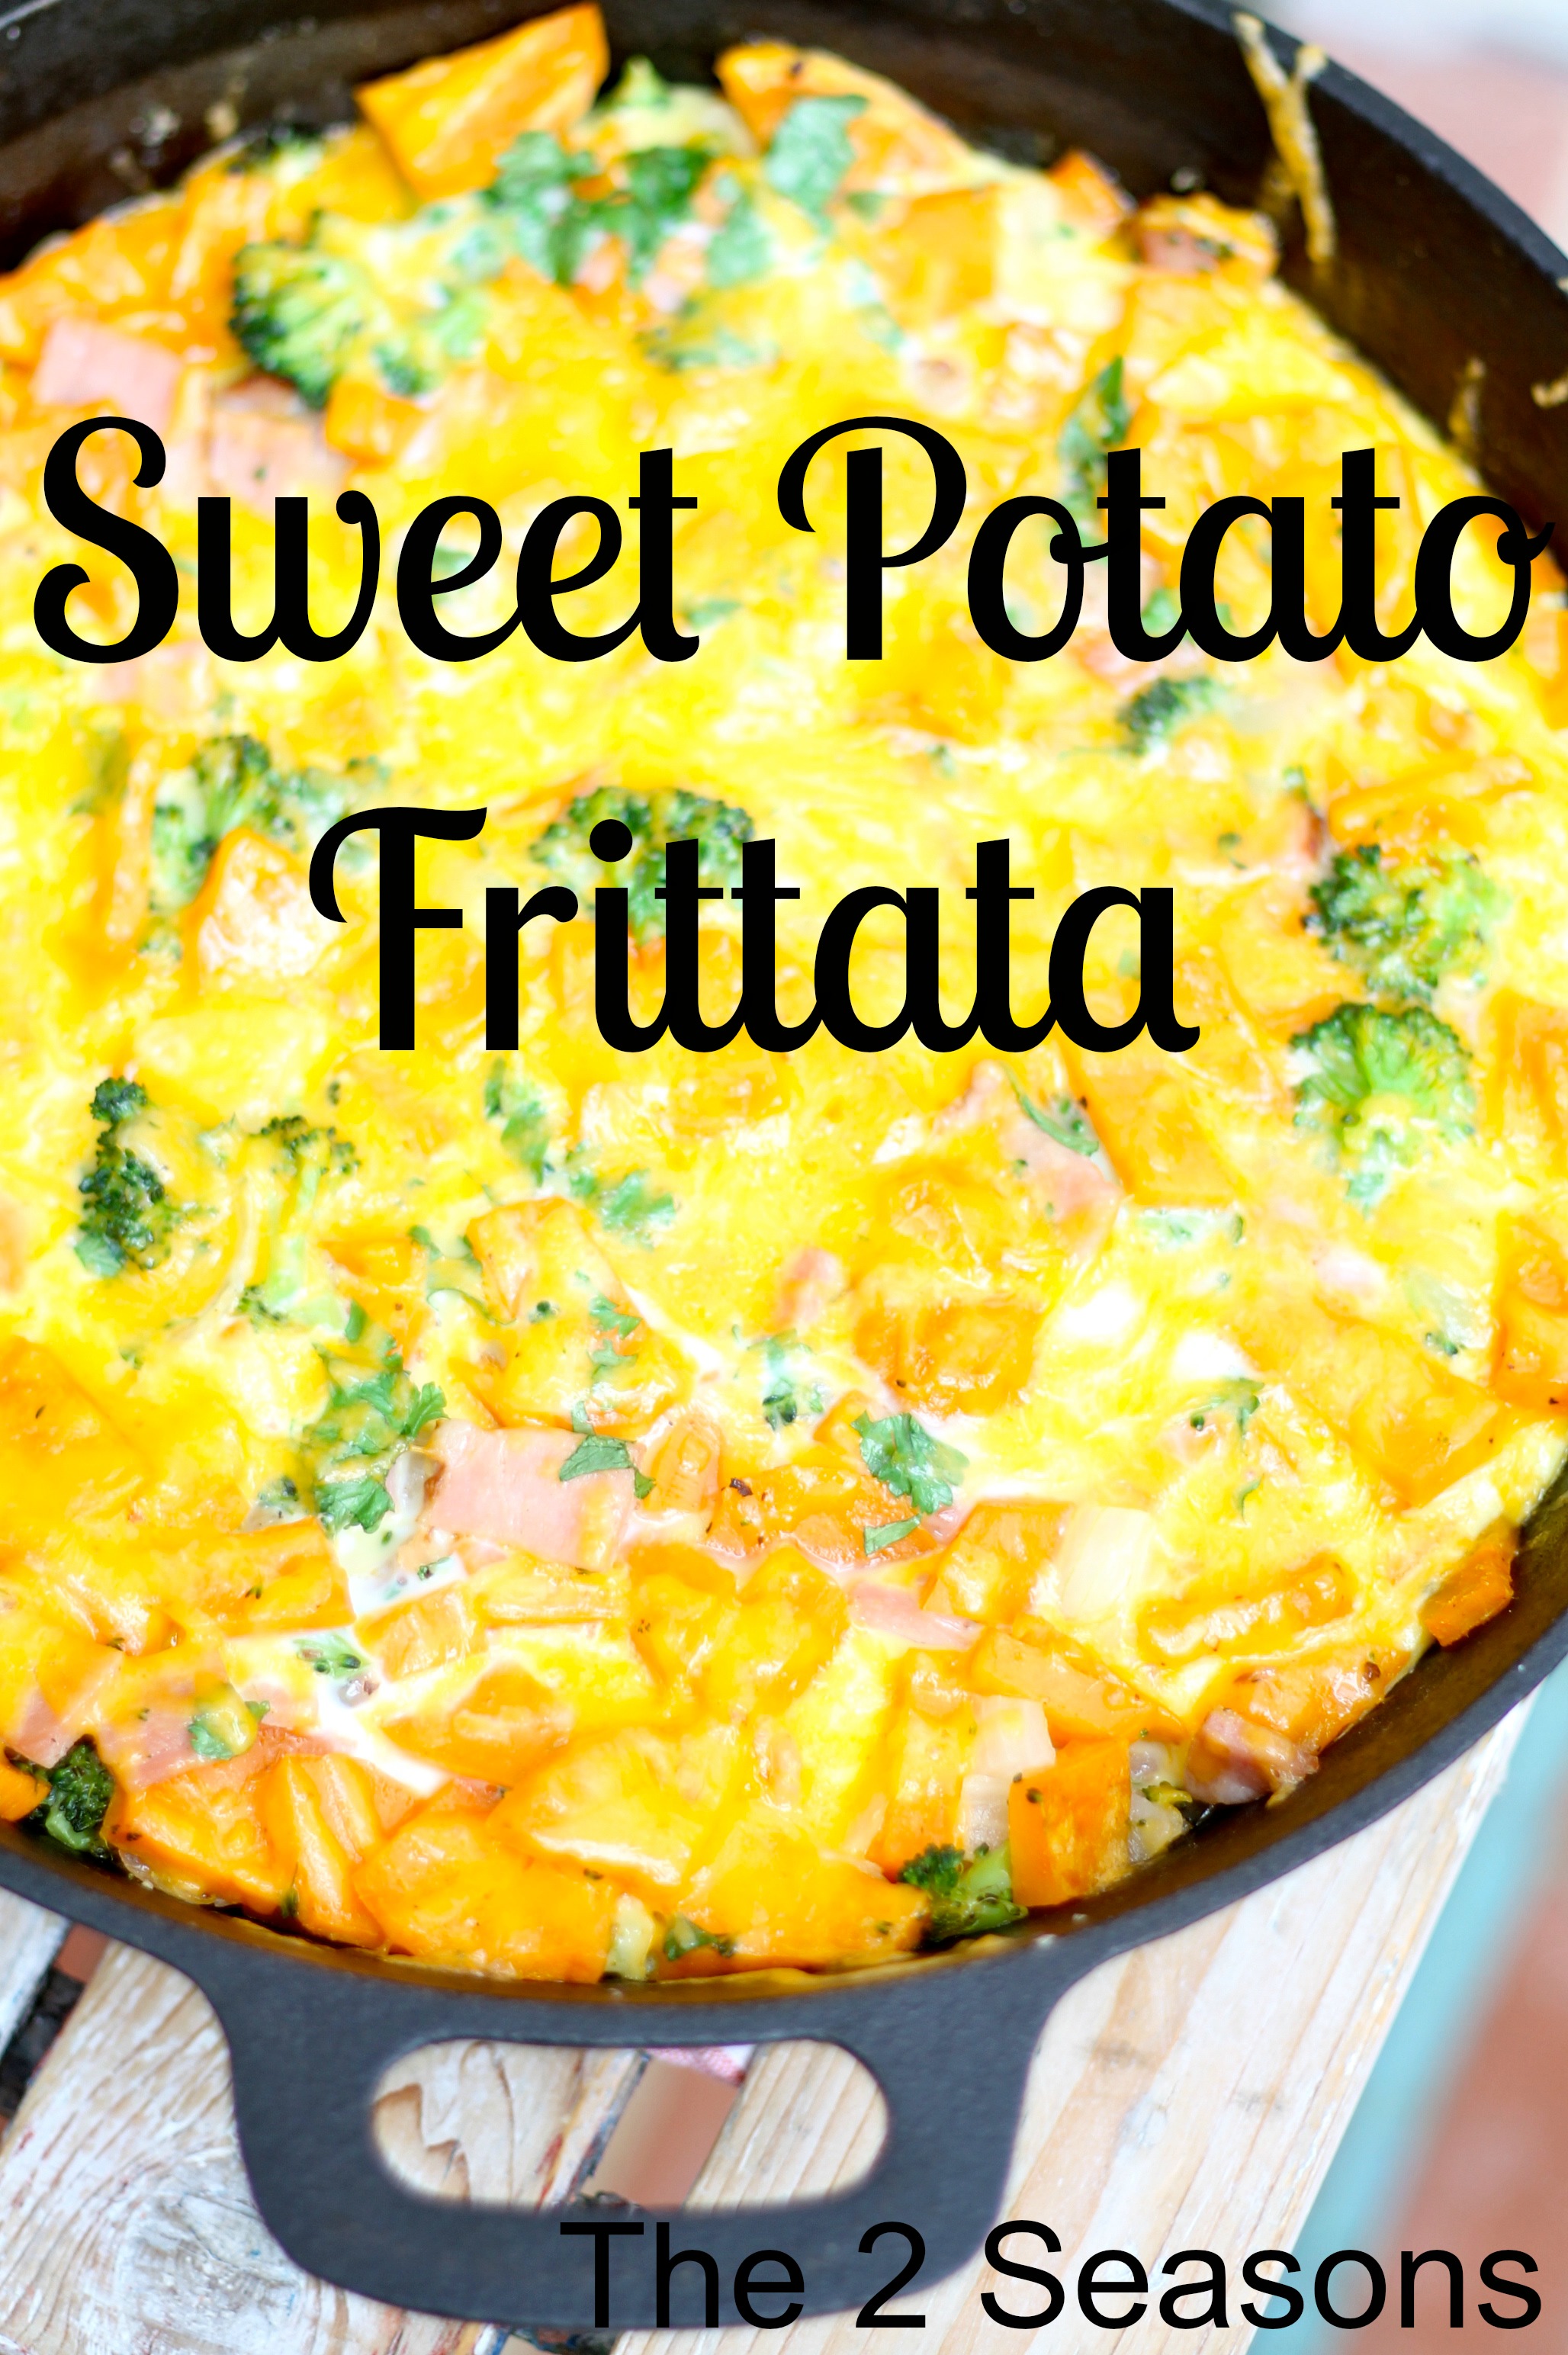 Sweet Potato Frittata - Chive Potato Salad